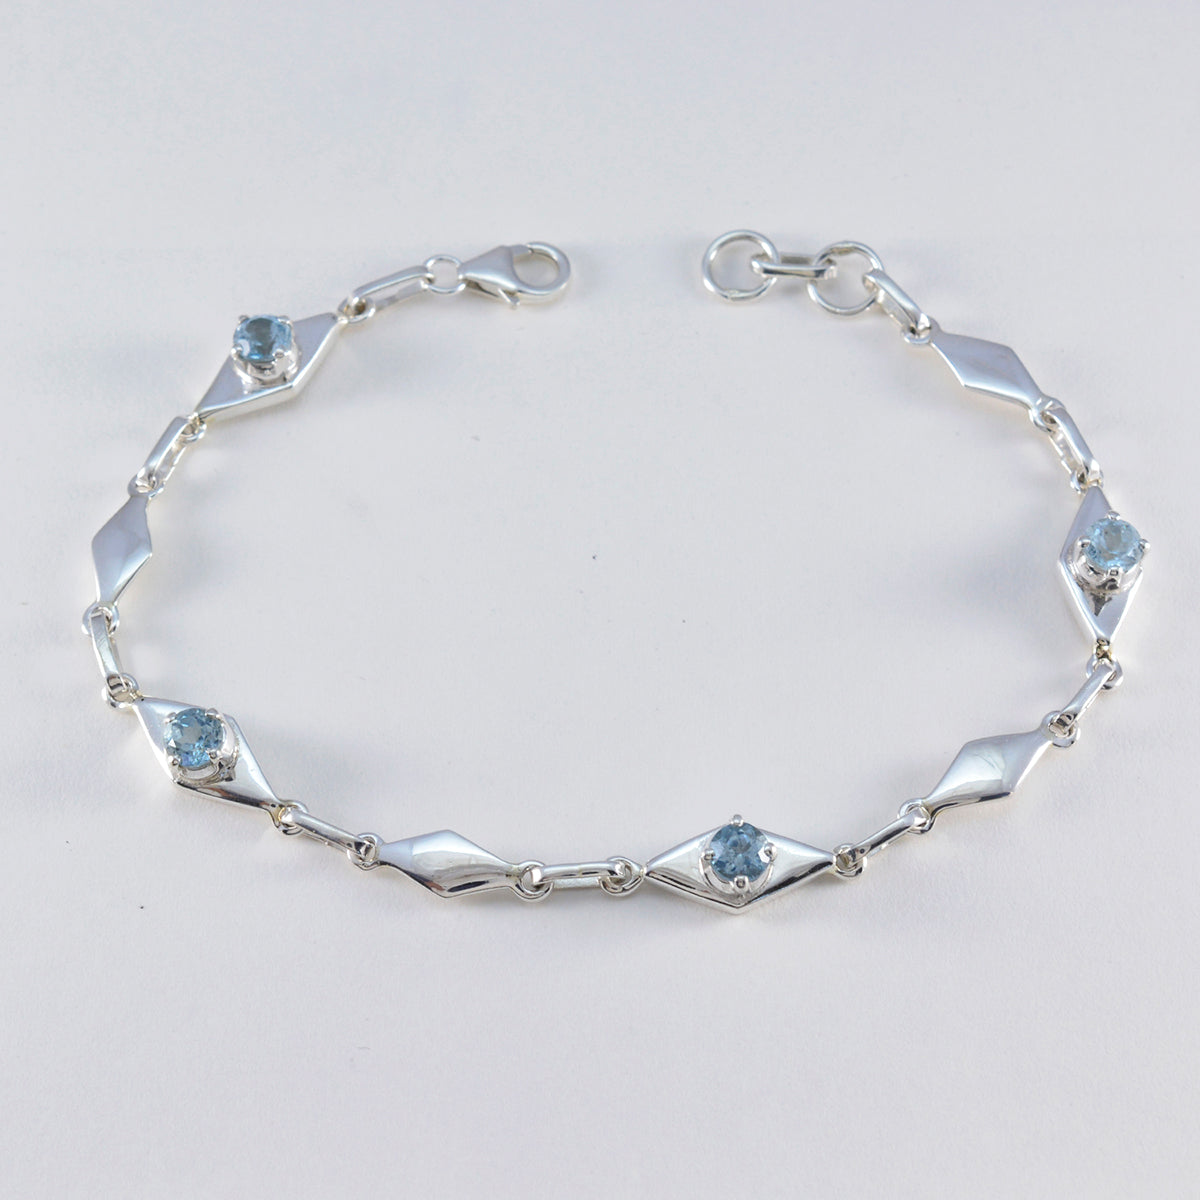 riyo smycken 925 sterling silver armband för kvinnor blå topas armband stift inställning armband med fisk krok länk armband l storlek 6-8,5 tum.